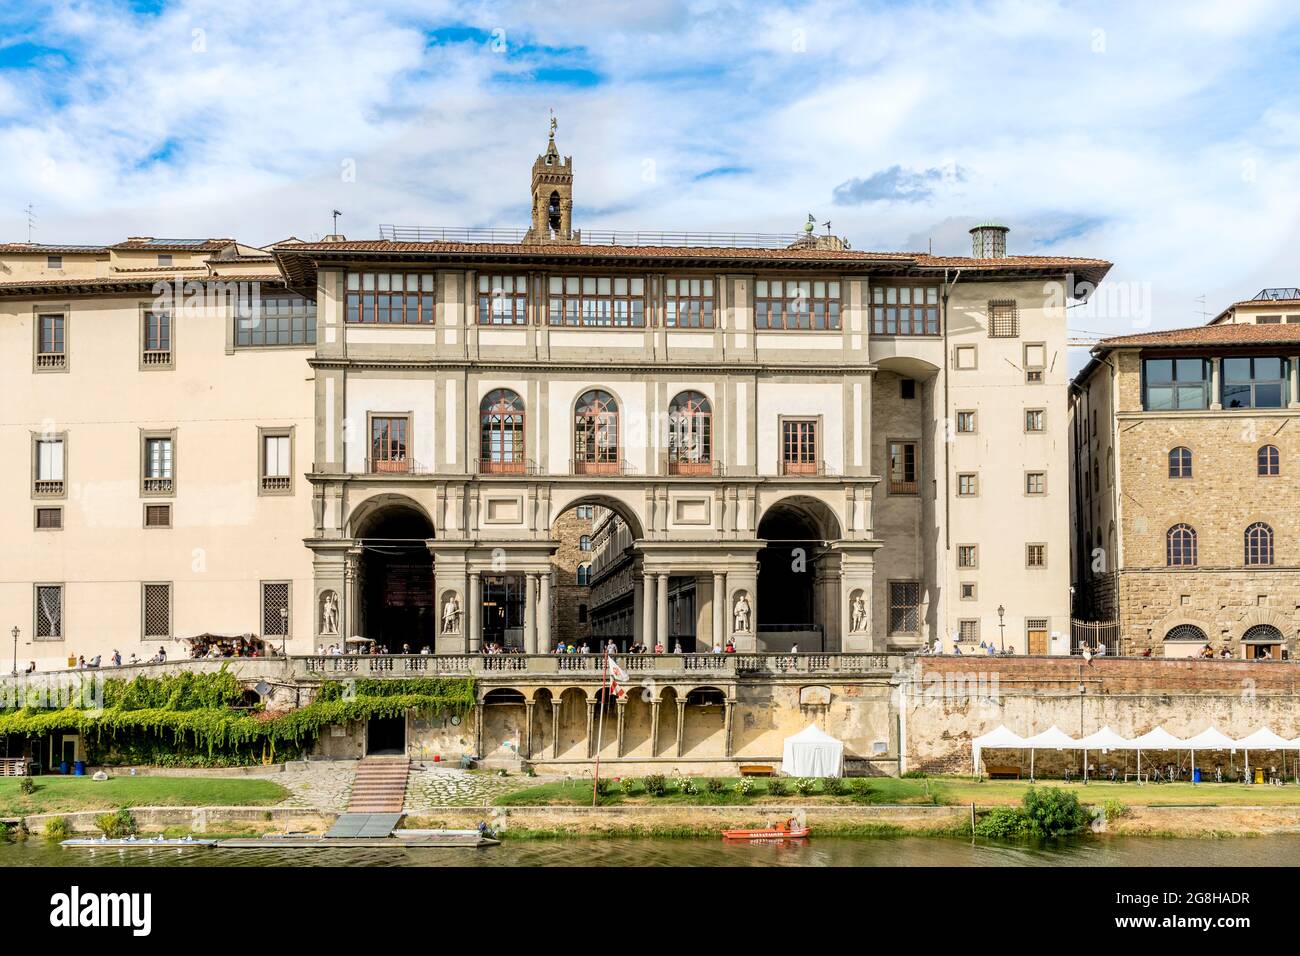 El Loggiato de los Uffizi, un patio entre las galerías de la Galería Uffizi, con nichos y estatuas, frente al río Arno, Florencia, Italia Foto de stock